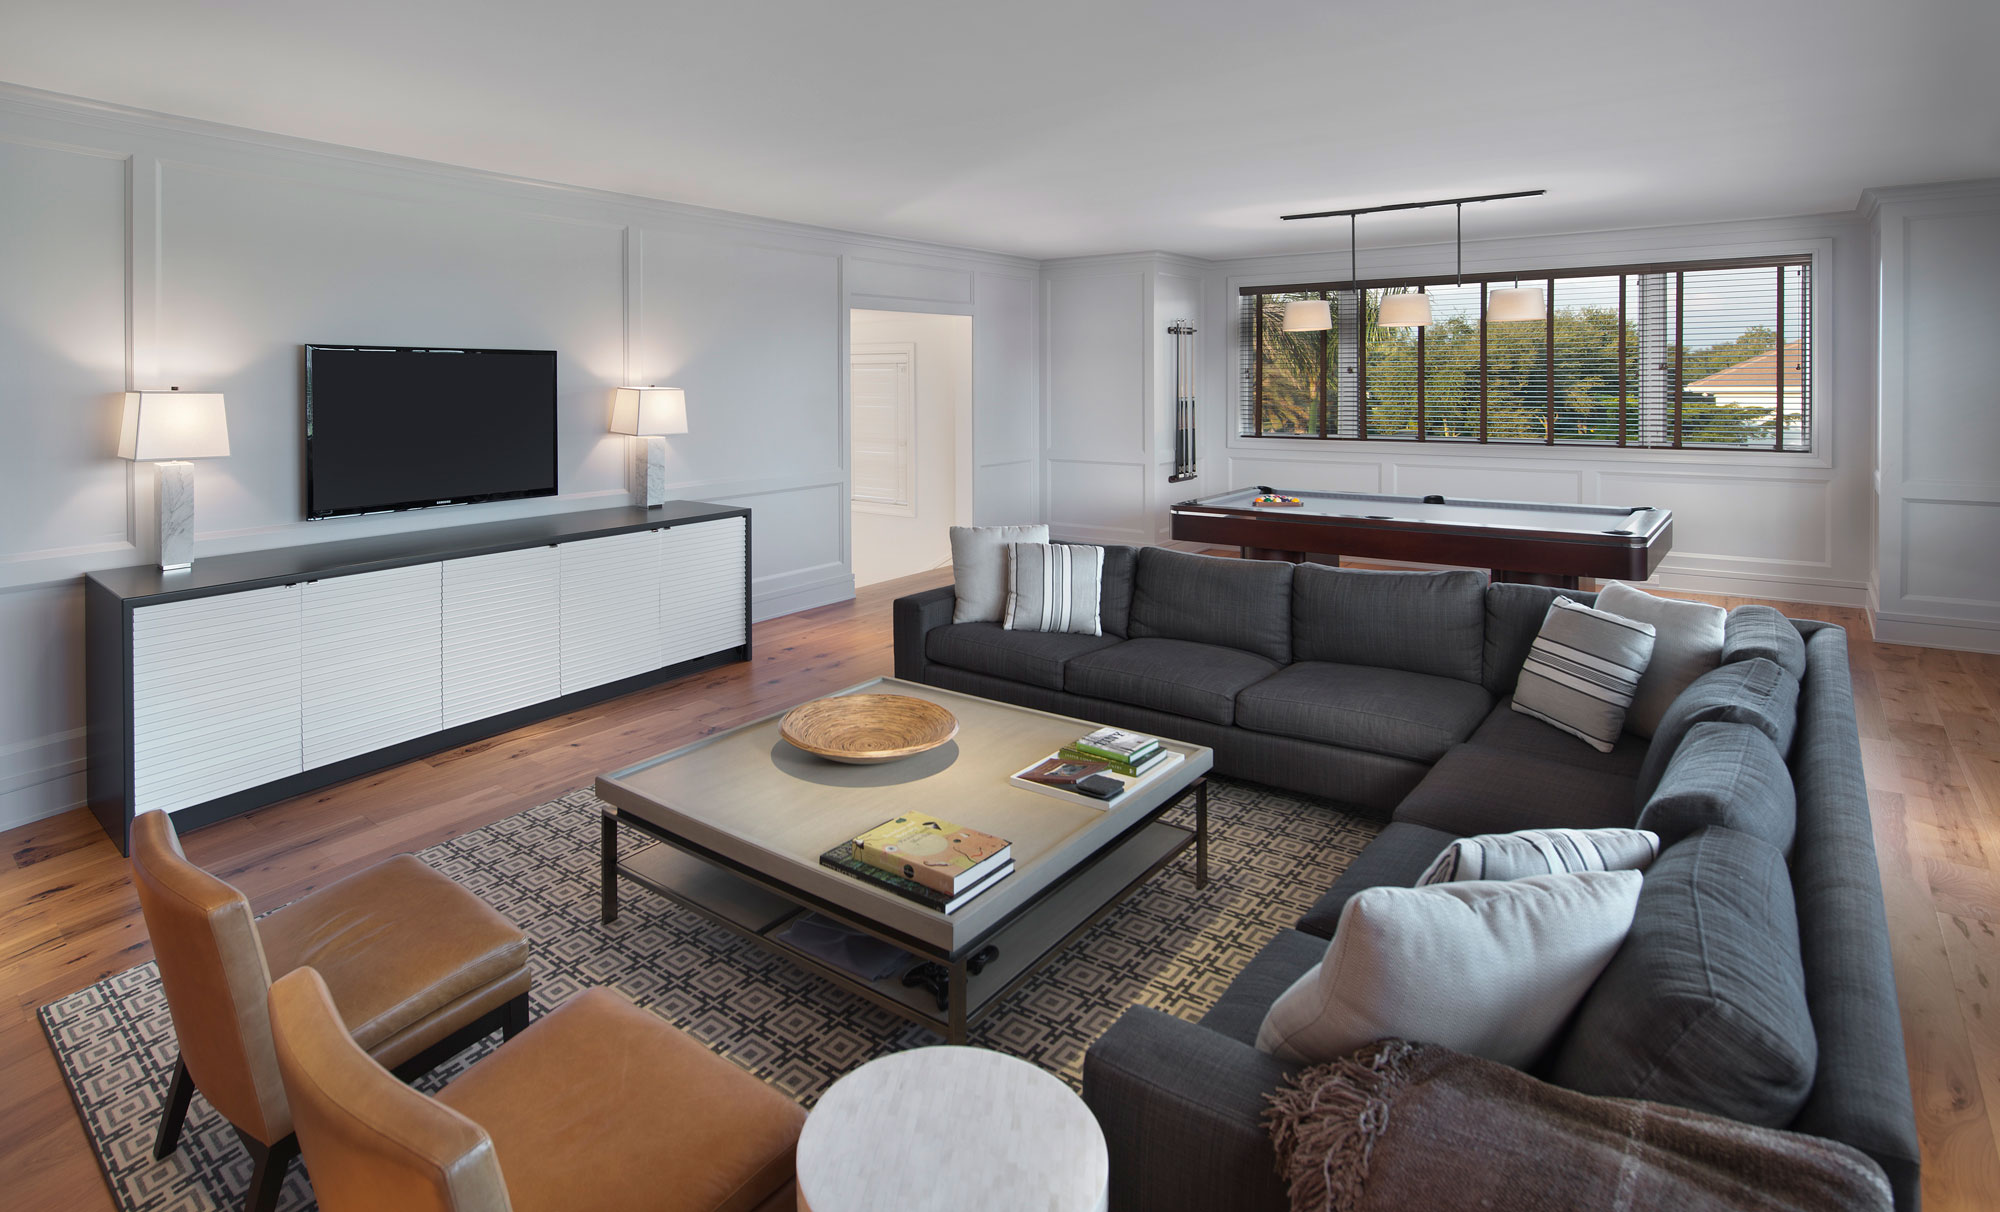 Wedo thiết kế nội thất phòng khách sang trọng và đẳng cấp cho biệt thự